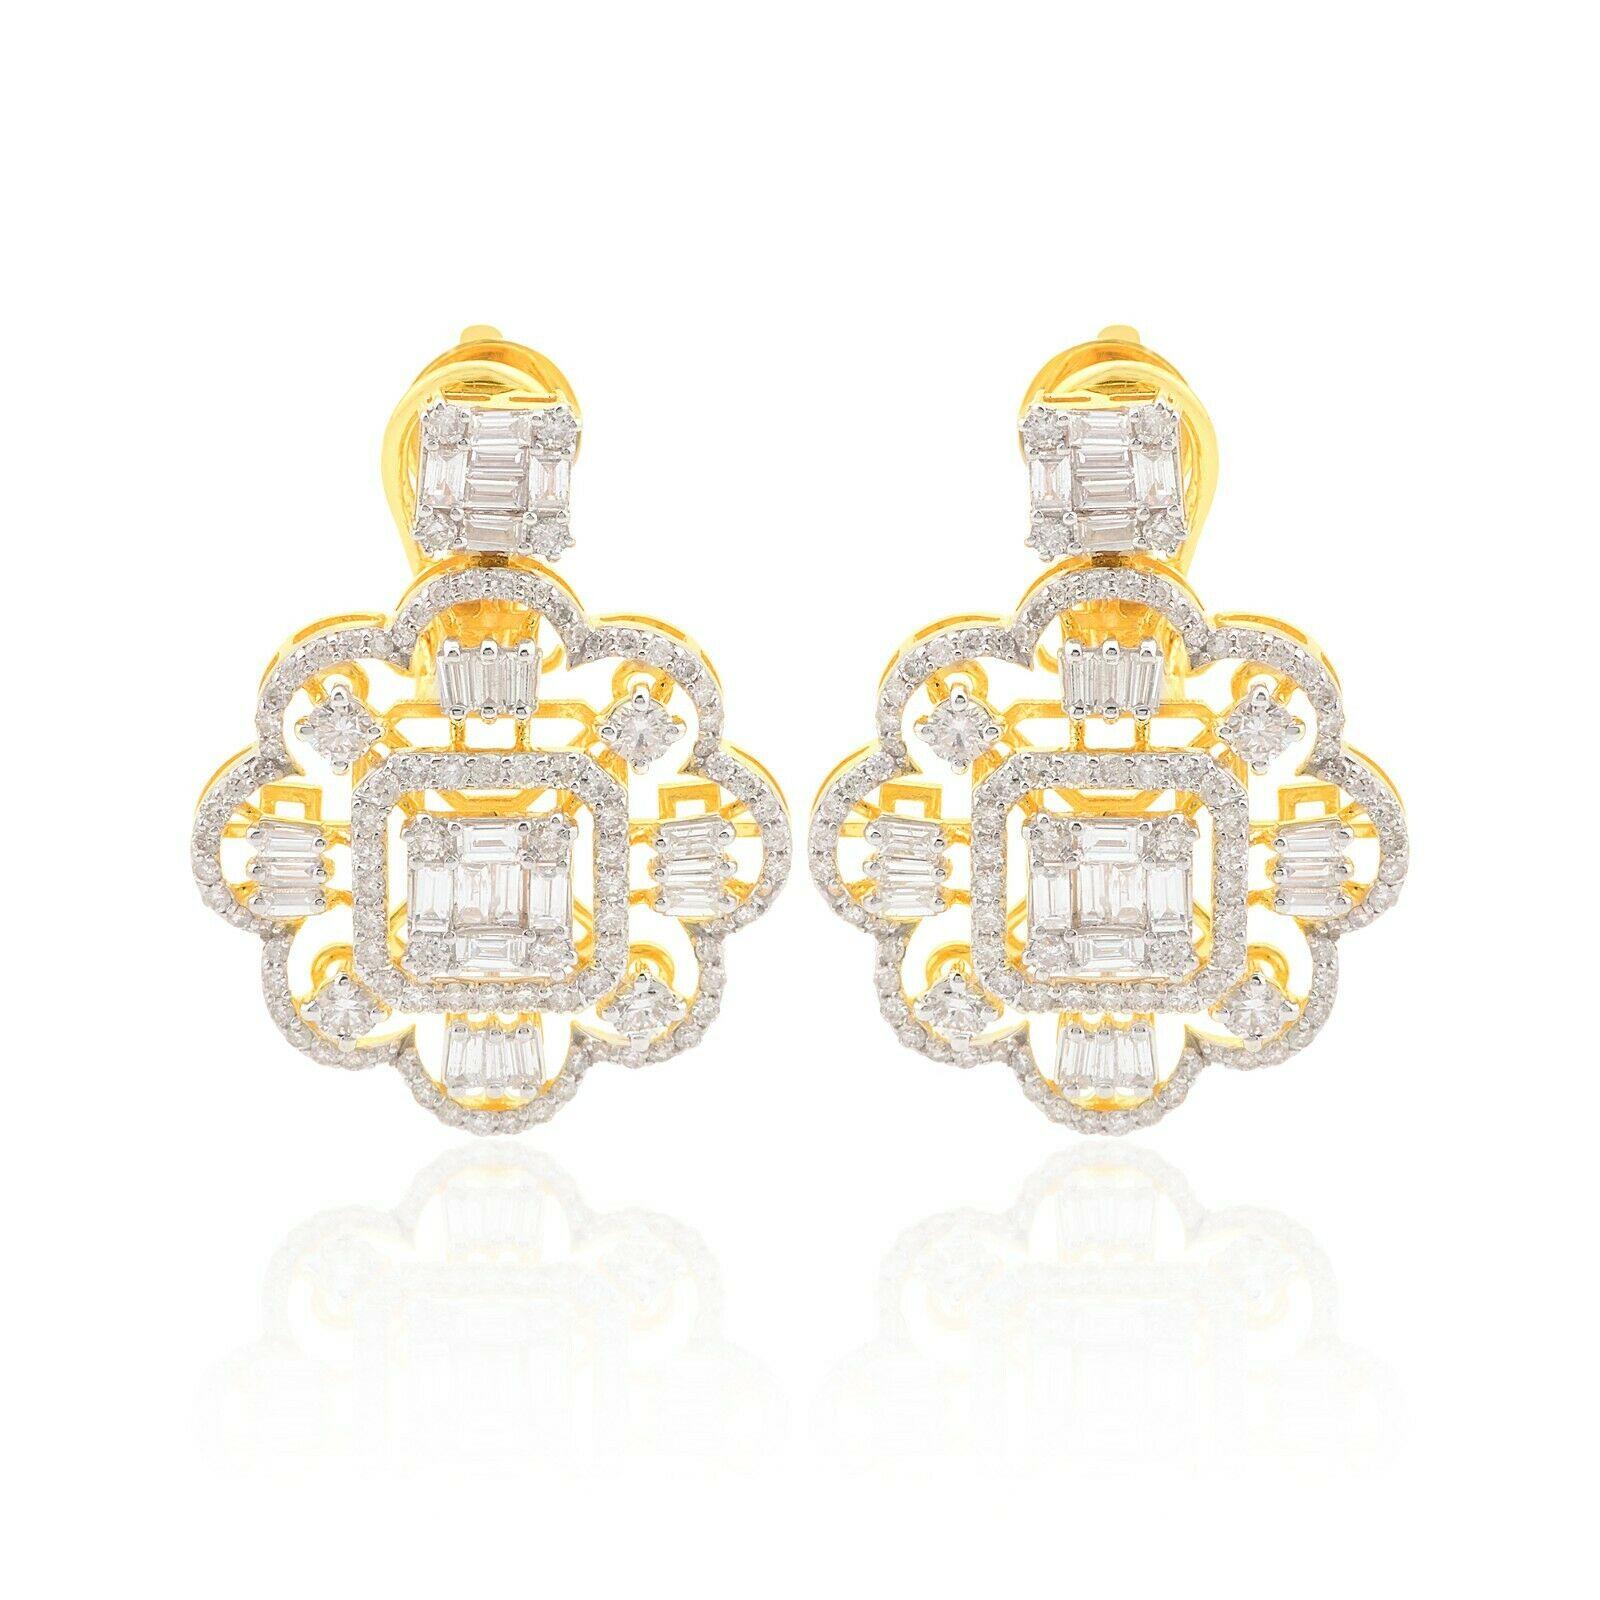 Diese atemberaubenden Ohrringe sind aus 14-karätigem Gold gegossen und von Hand mit 3,50 Karat funkelnden Diamanten besetzt. 

FOLLOW MEGHNA JEWELS Storefront, um die neueste Kollektion und exklusive Stücke zu sehen. Meghna Jewels ist stolz darauf,